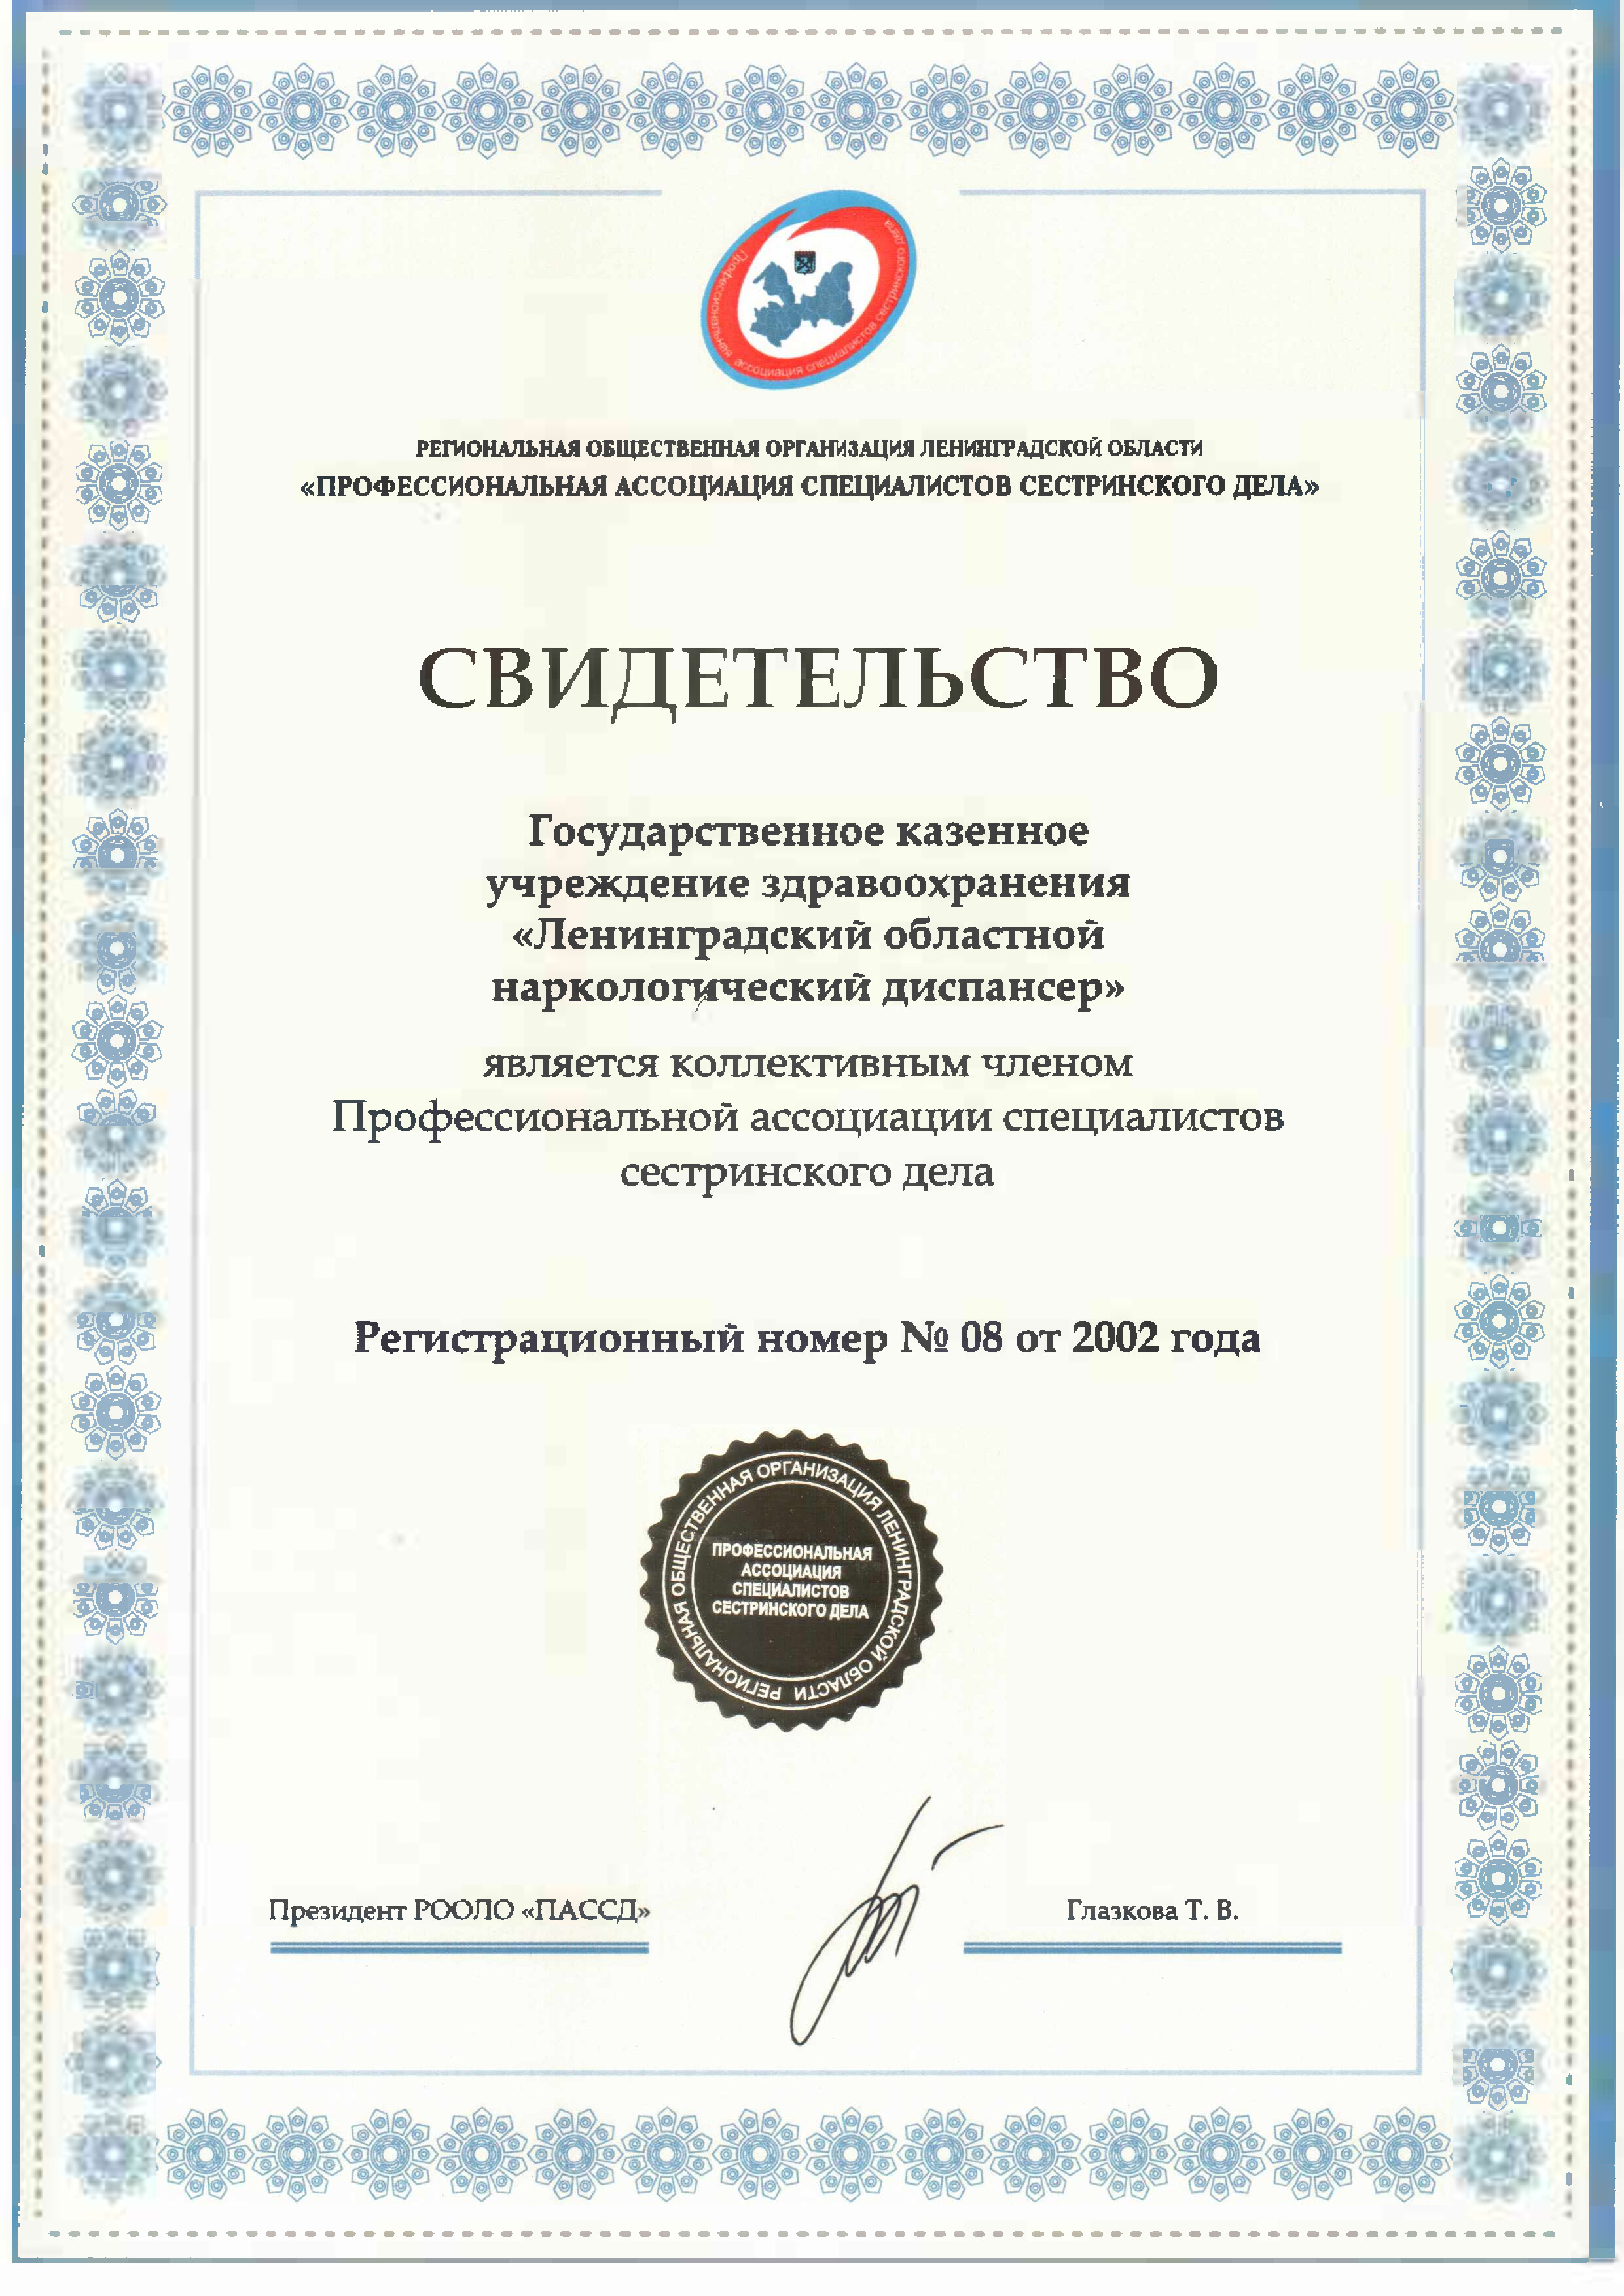 ГБУЗ ЛОНД: сертификат